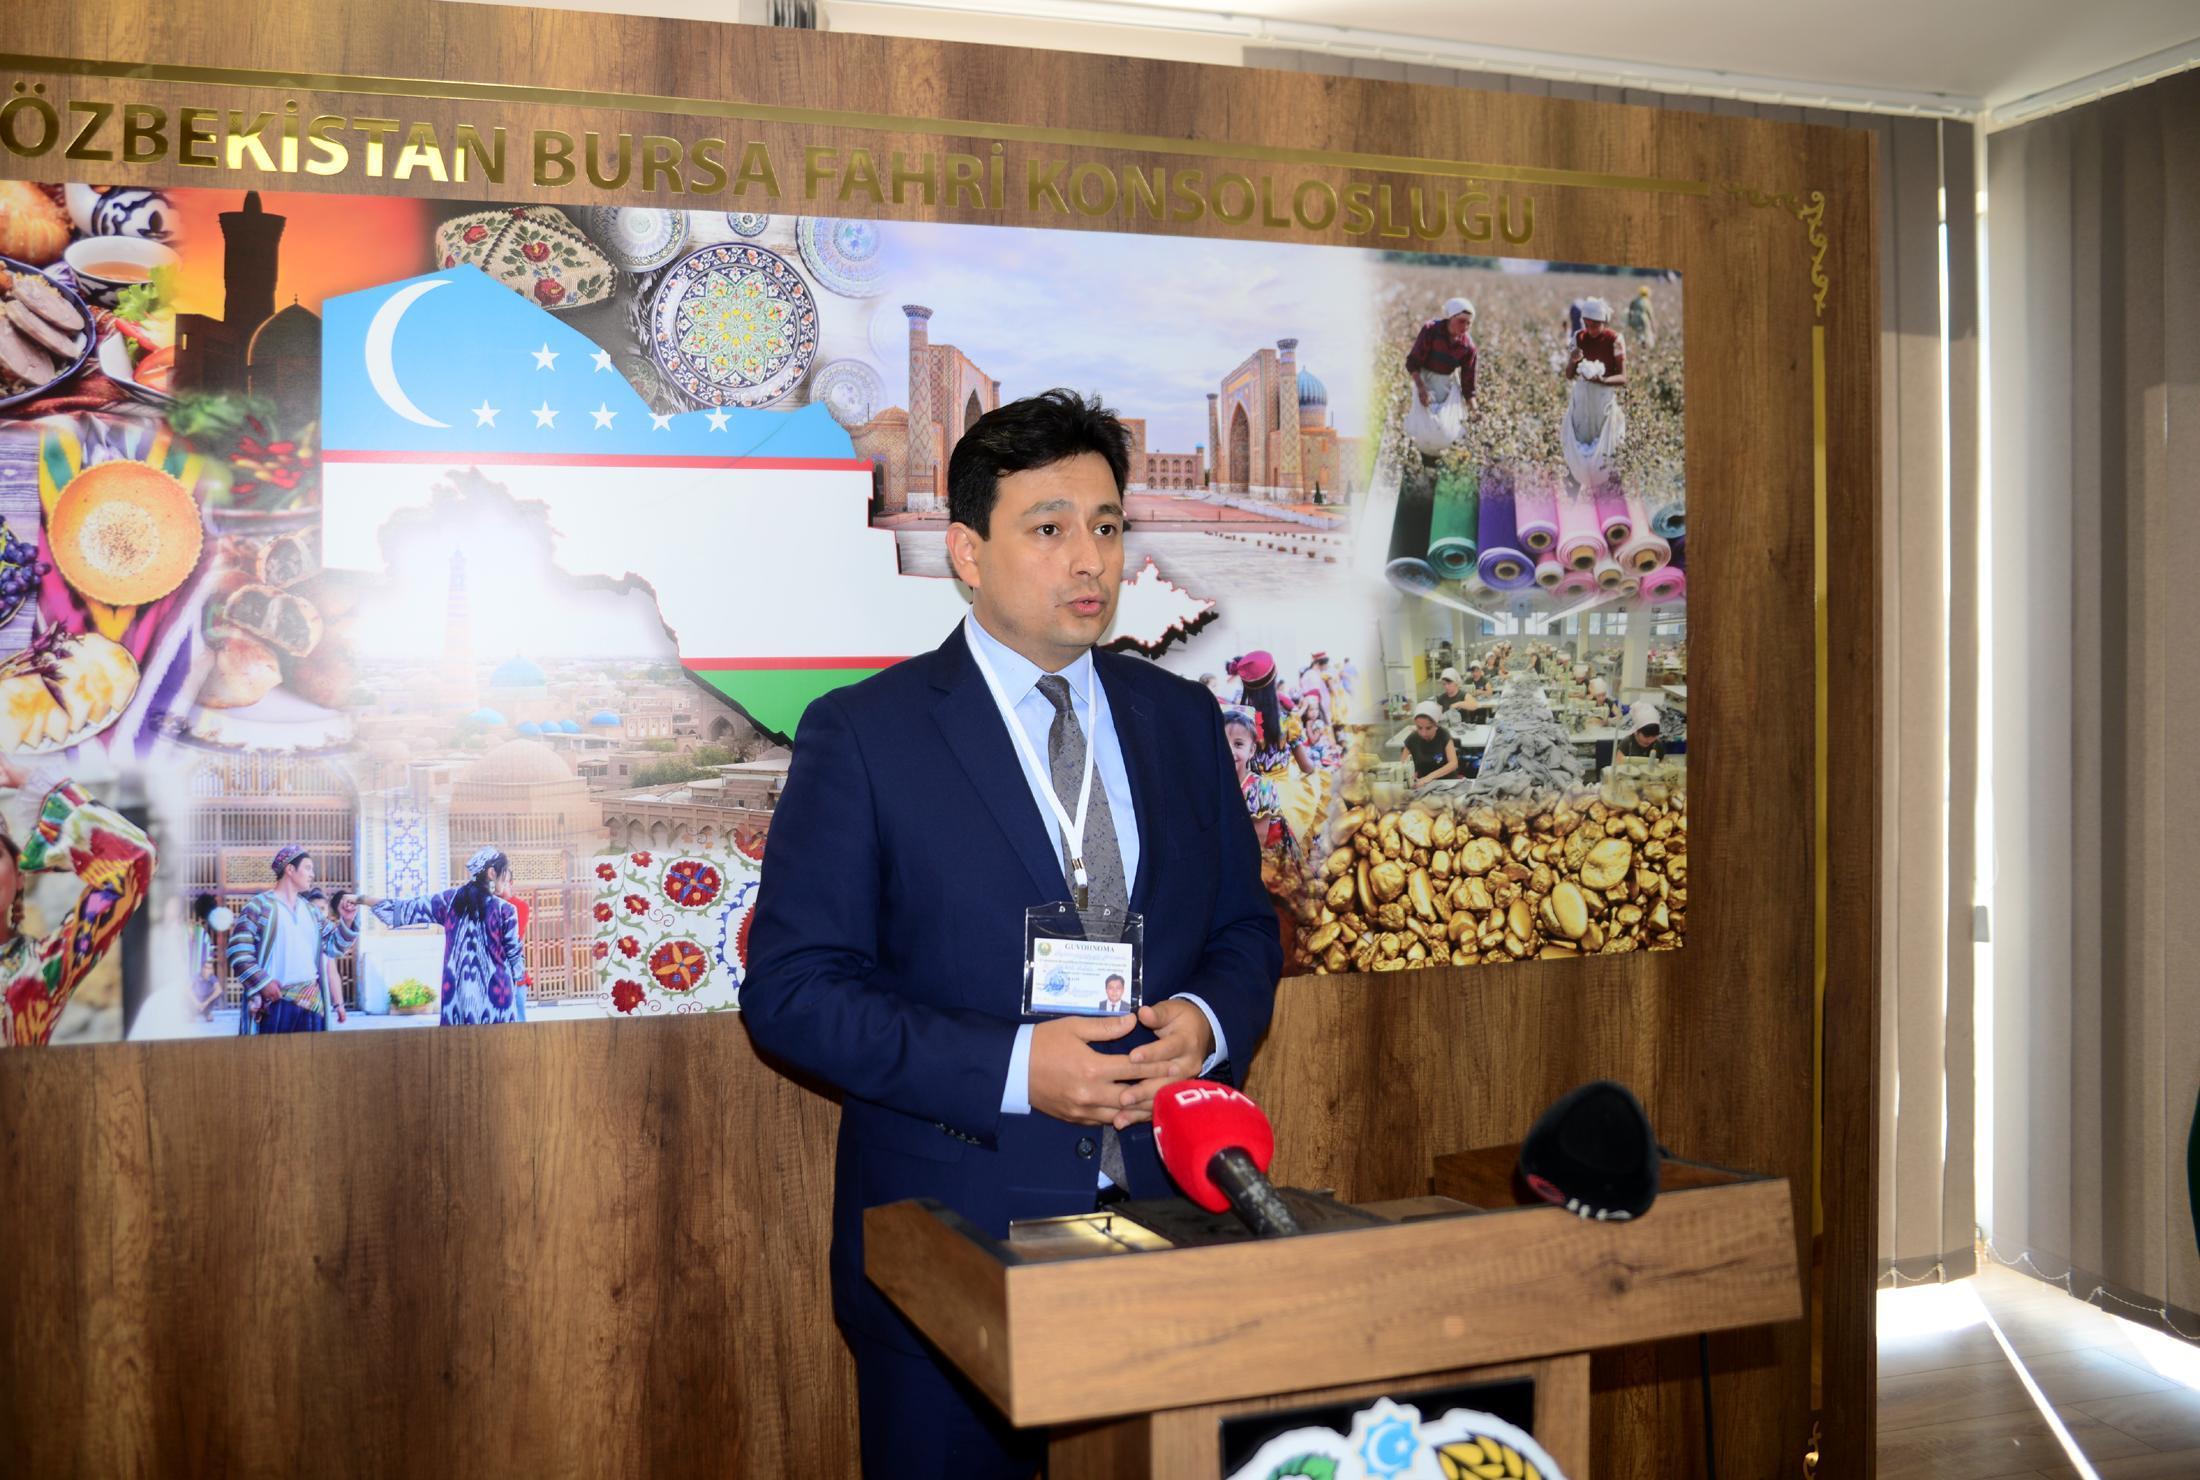 Özbekistan Cumhurbaşkanlığı seçimi için Bursada sandık kuruldu